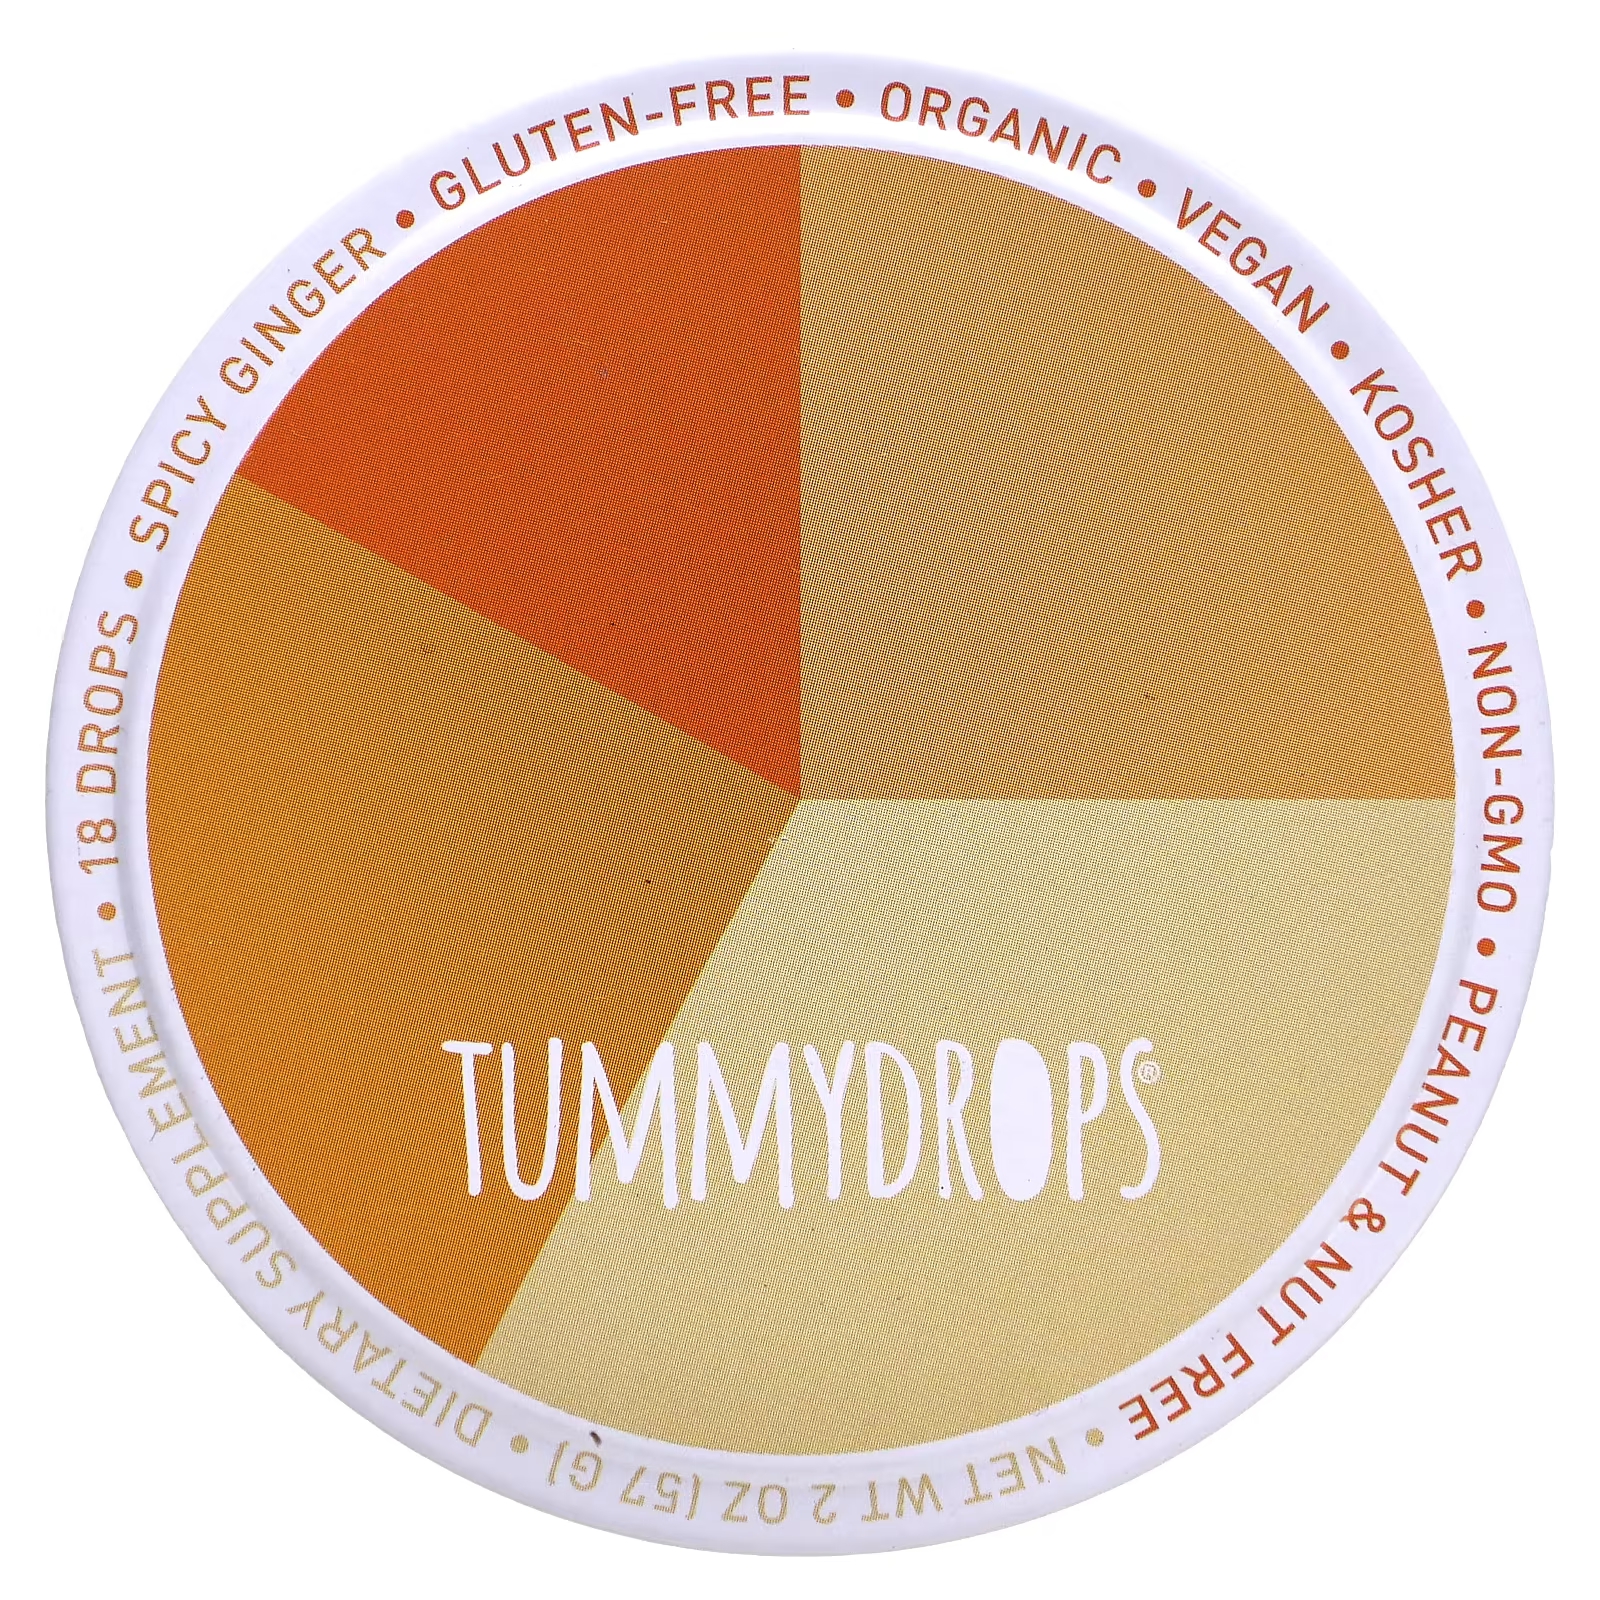 Пряный имбирь Tummydrops, 18 капель tummydrops сладкая имбирная груша 18 капель 57 г 2 унции